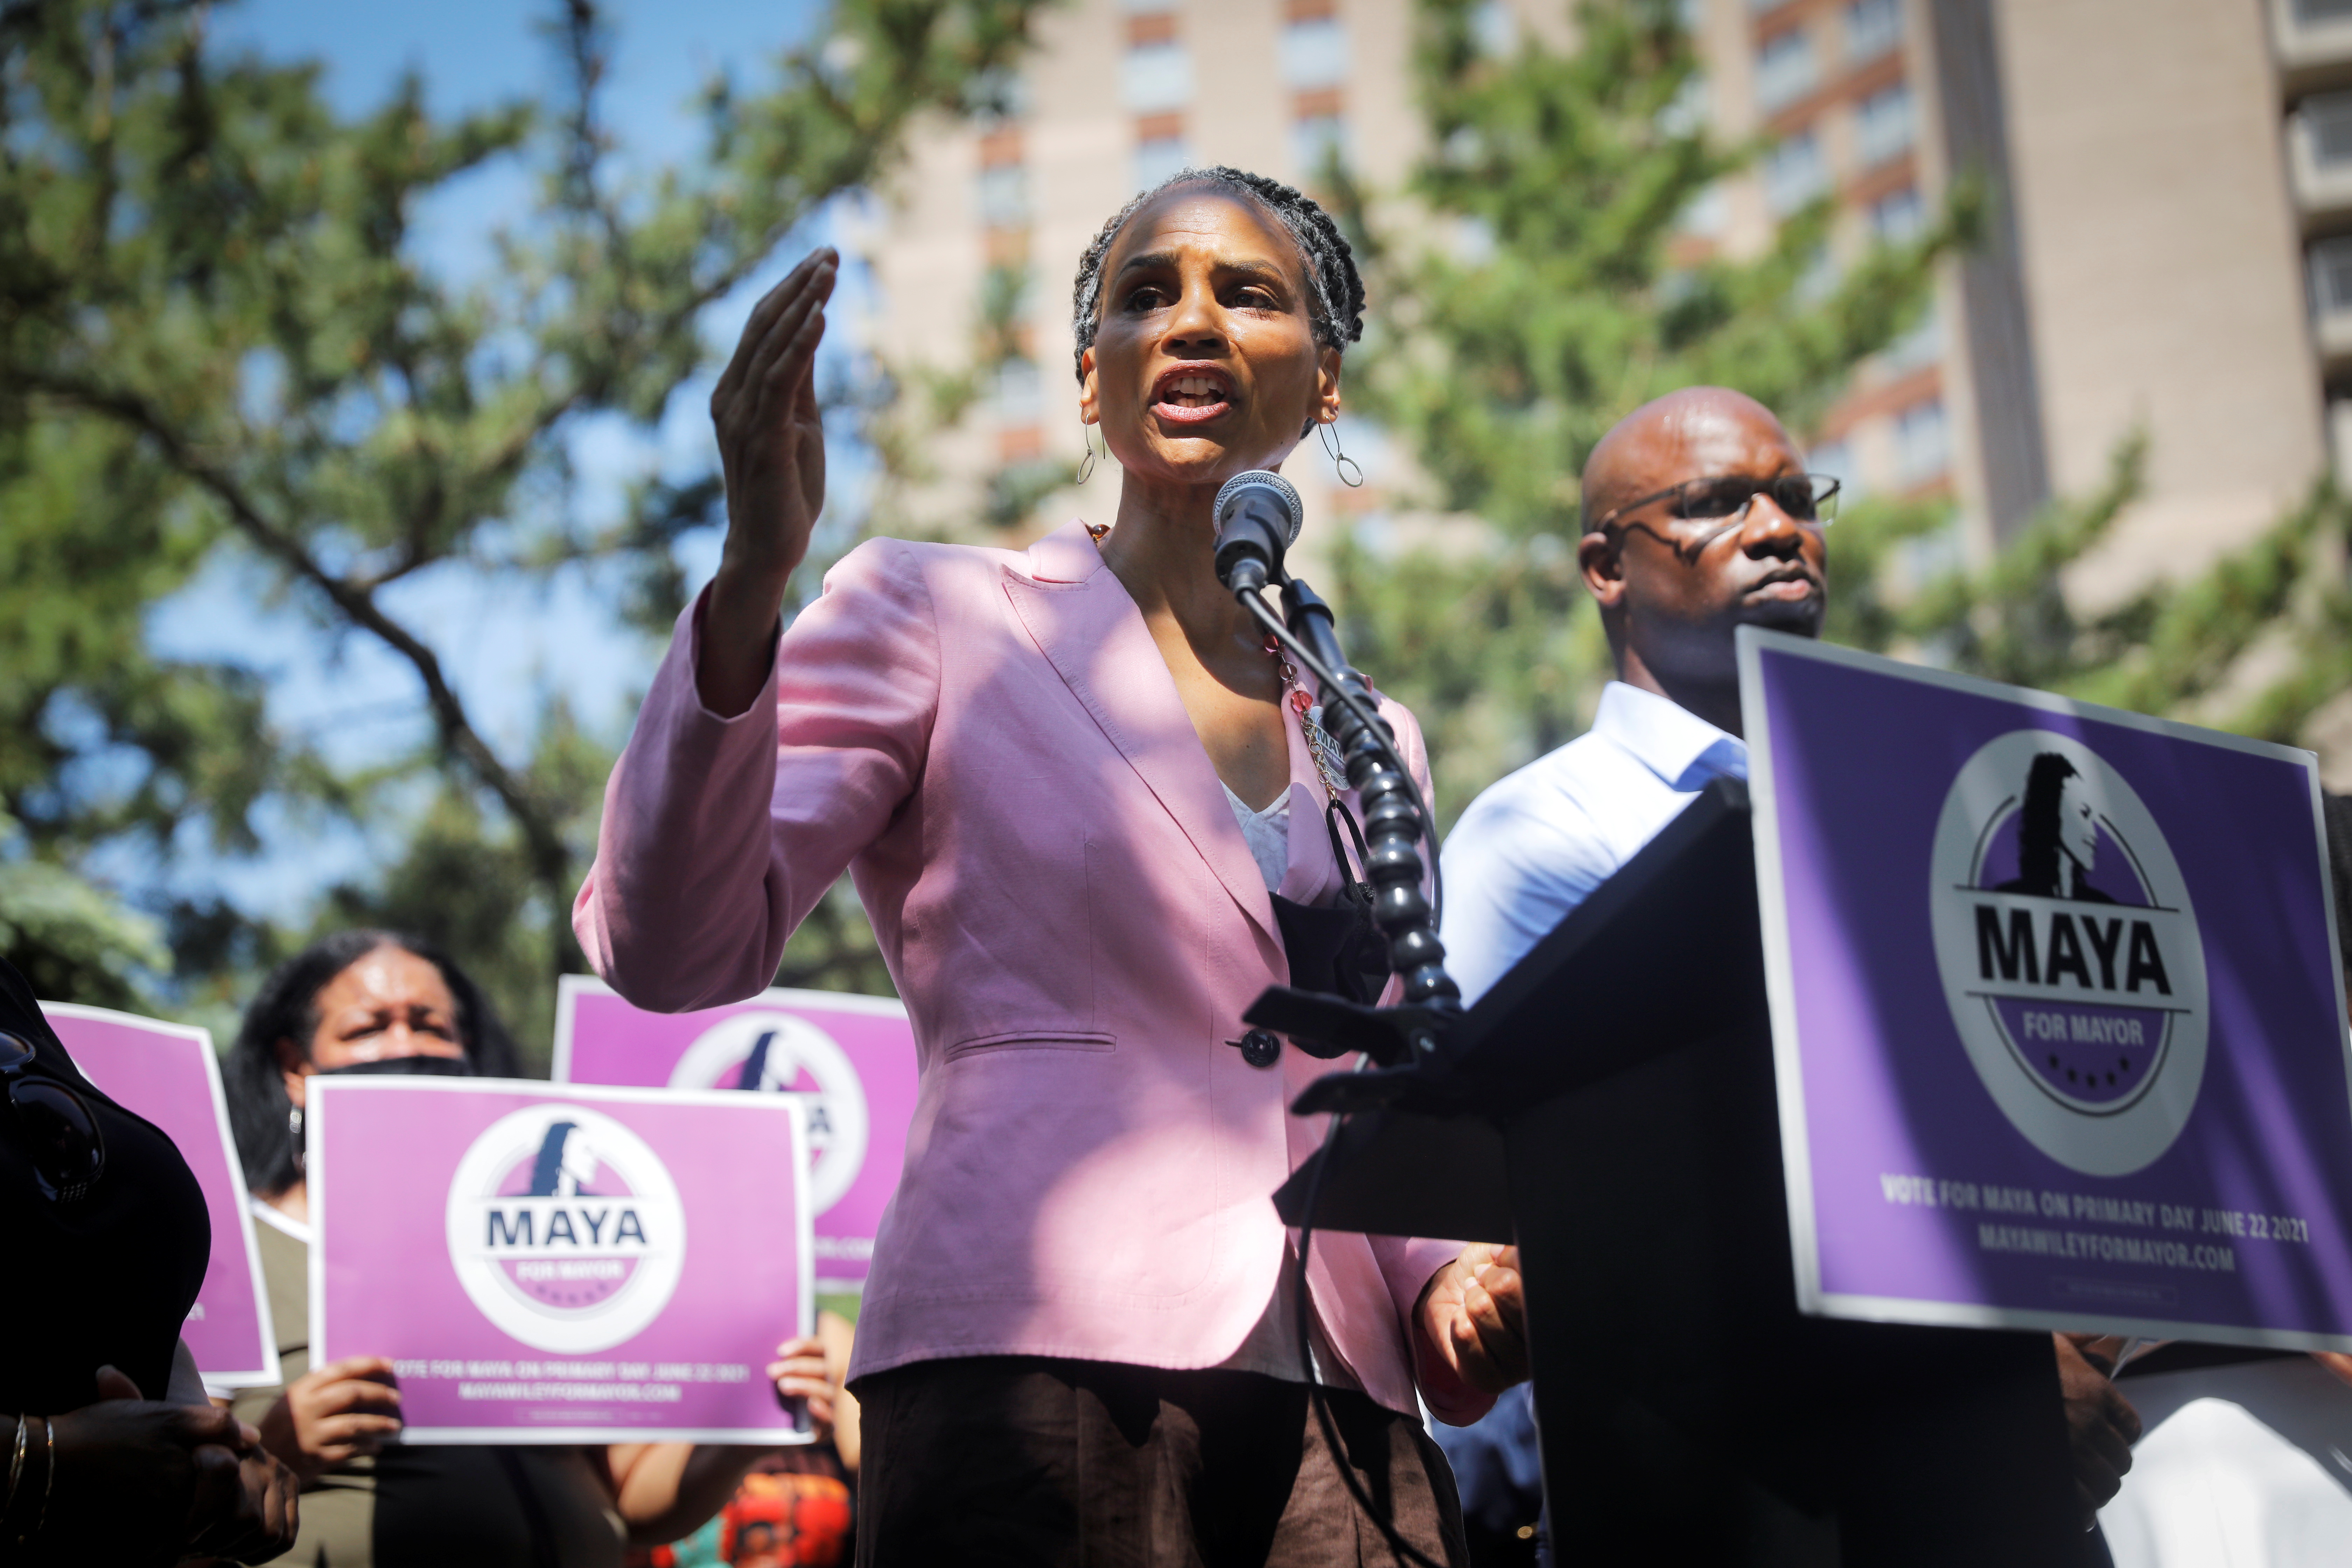 Maya Wiley recibió el apoyo de la congresista Alexandria Ocasio-Cortez, estrella del ala izquierda del Partido Demócrata, y podría ser la primera mujer alcalde de Nueva York (Reuters)

